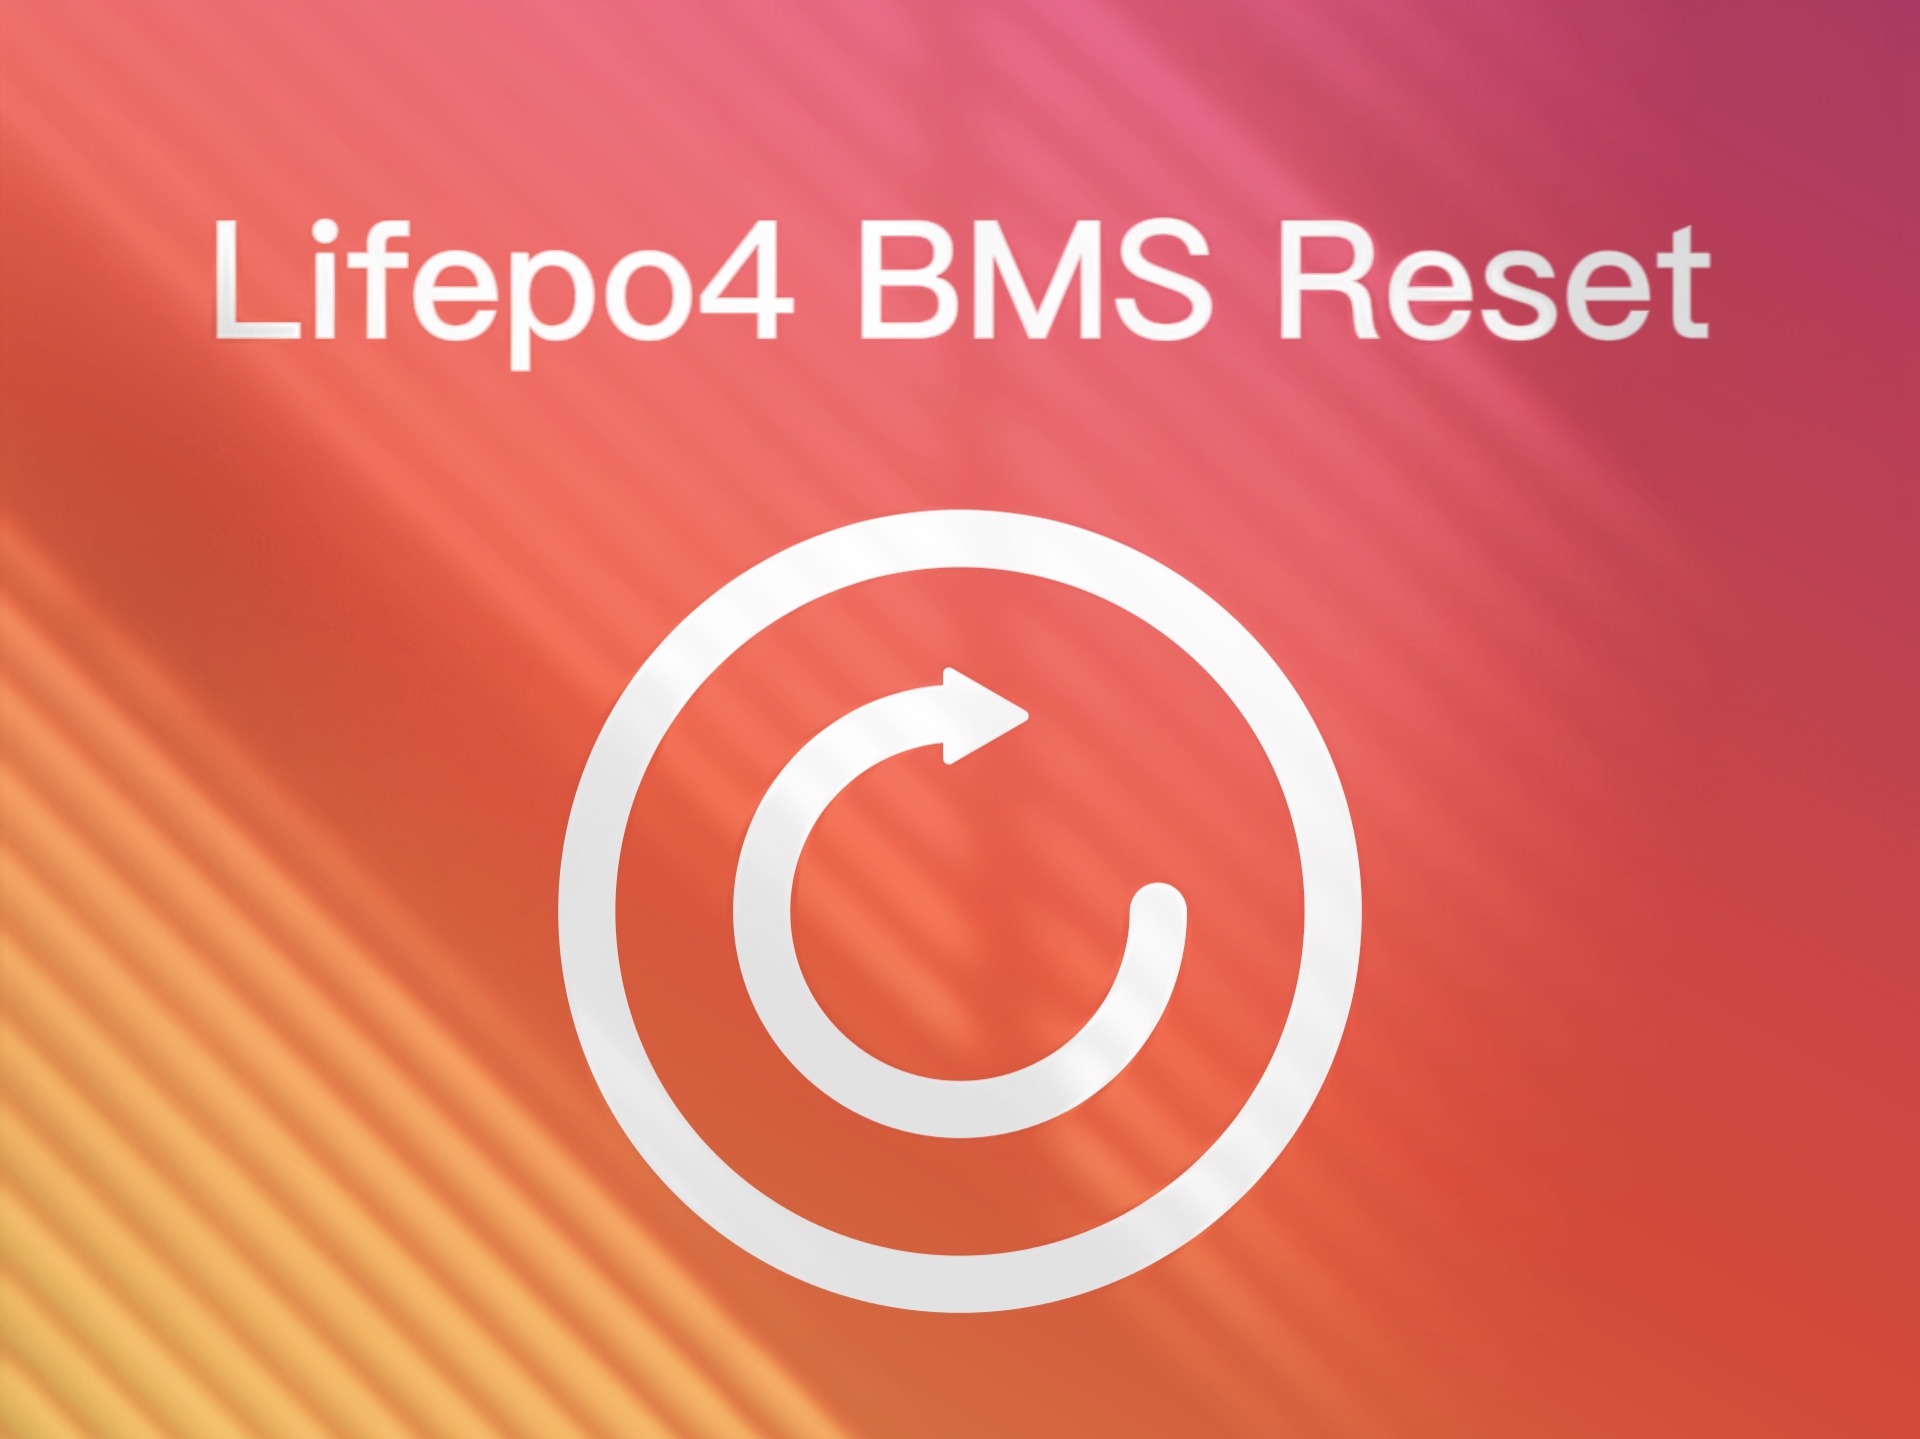 Lifepo4 BMS Reset